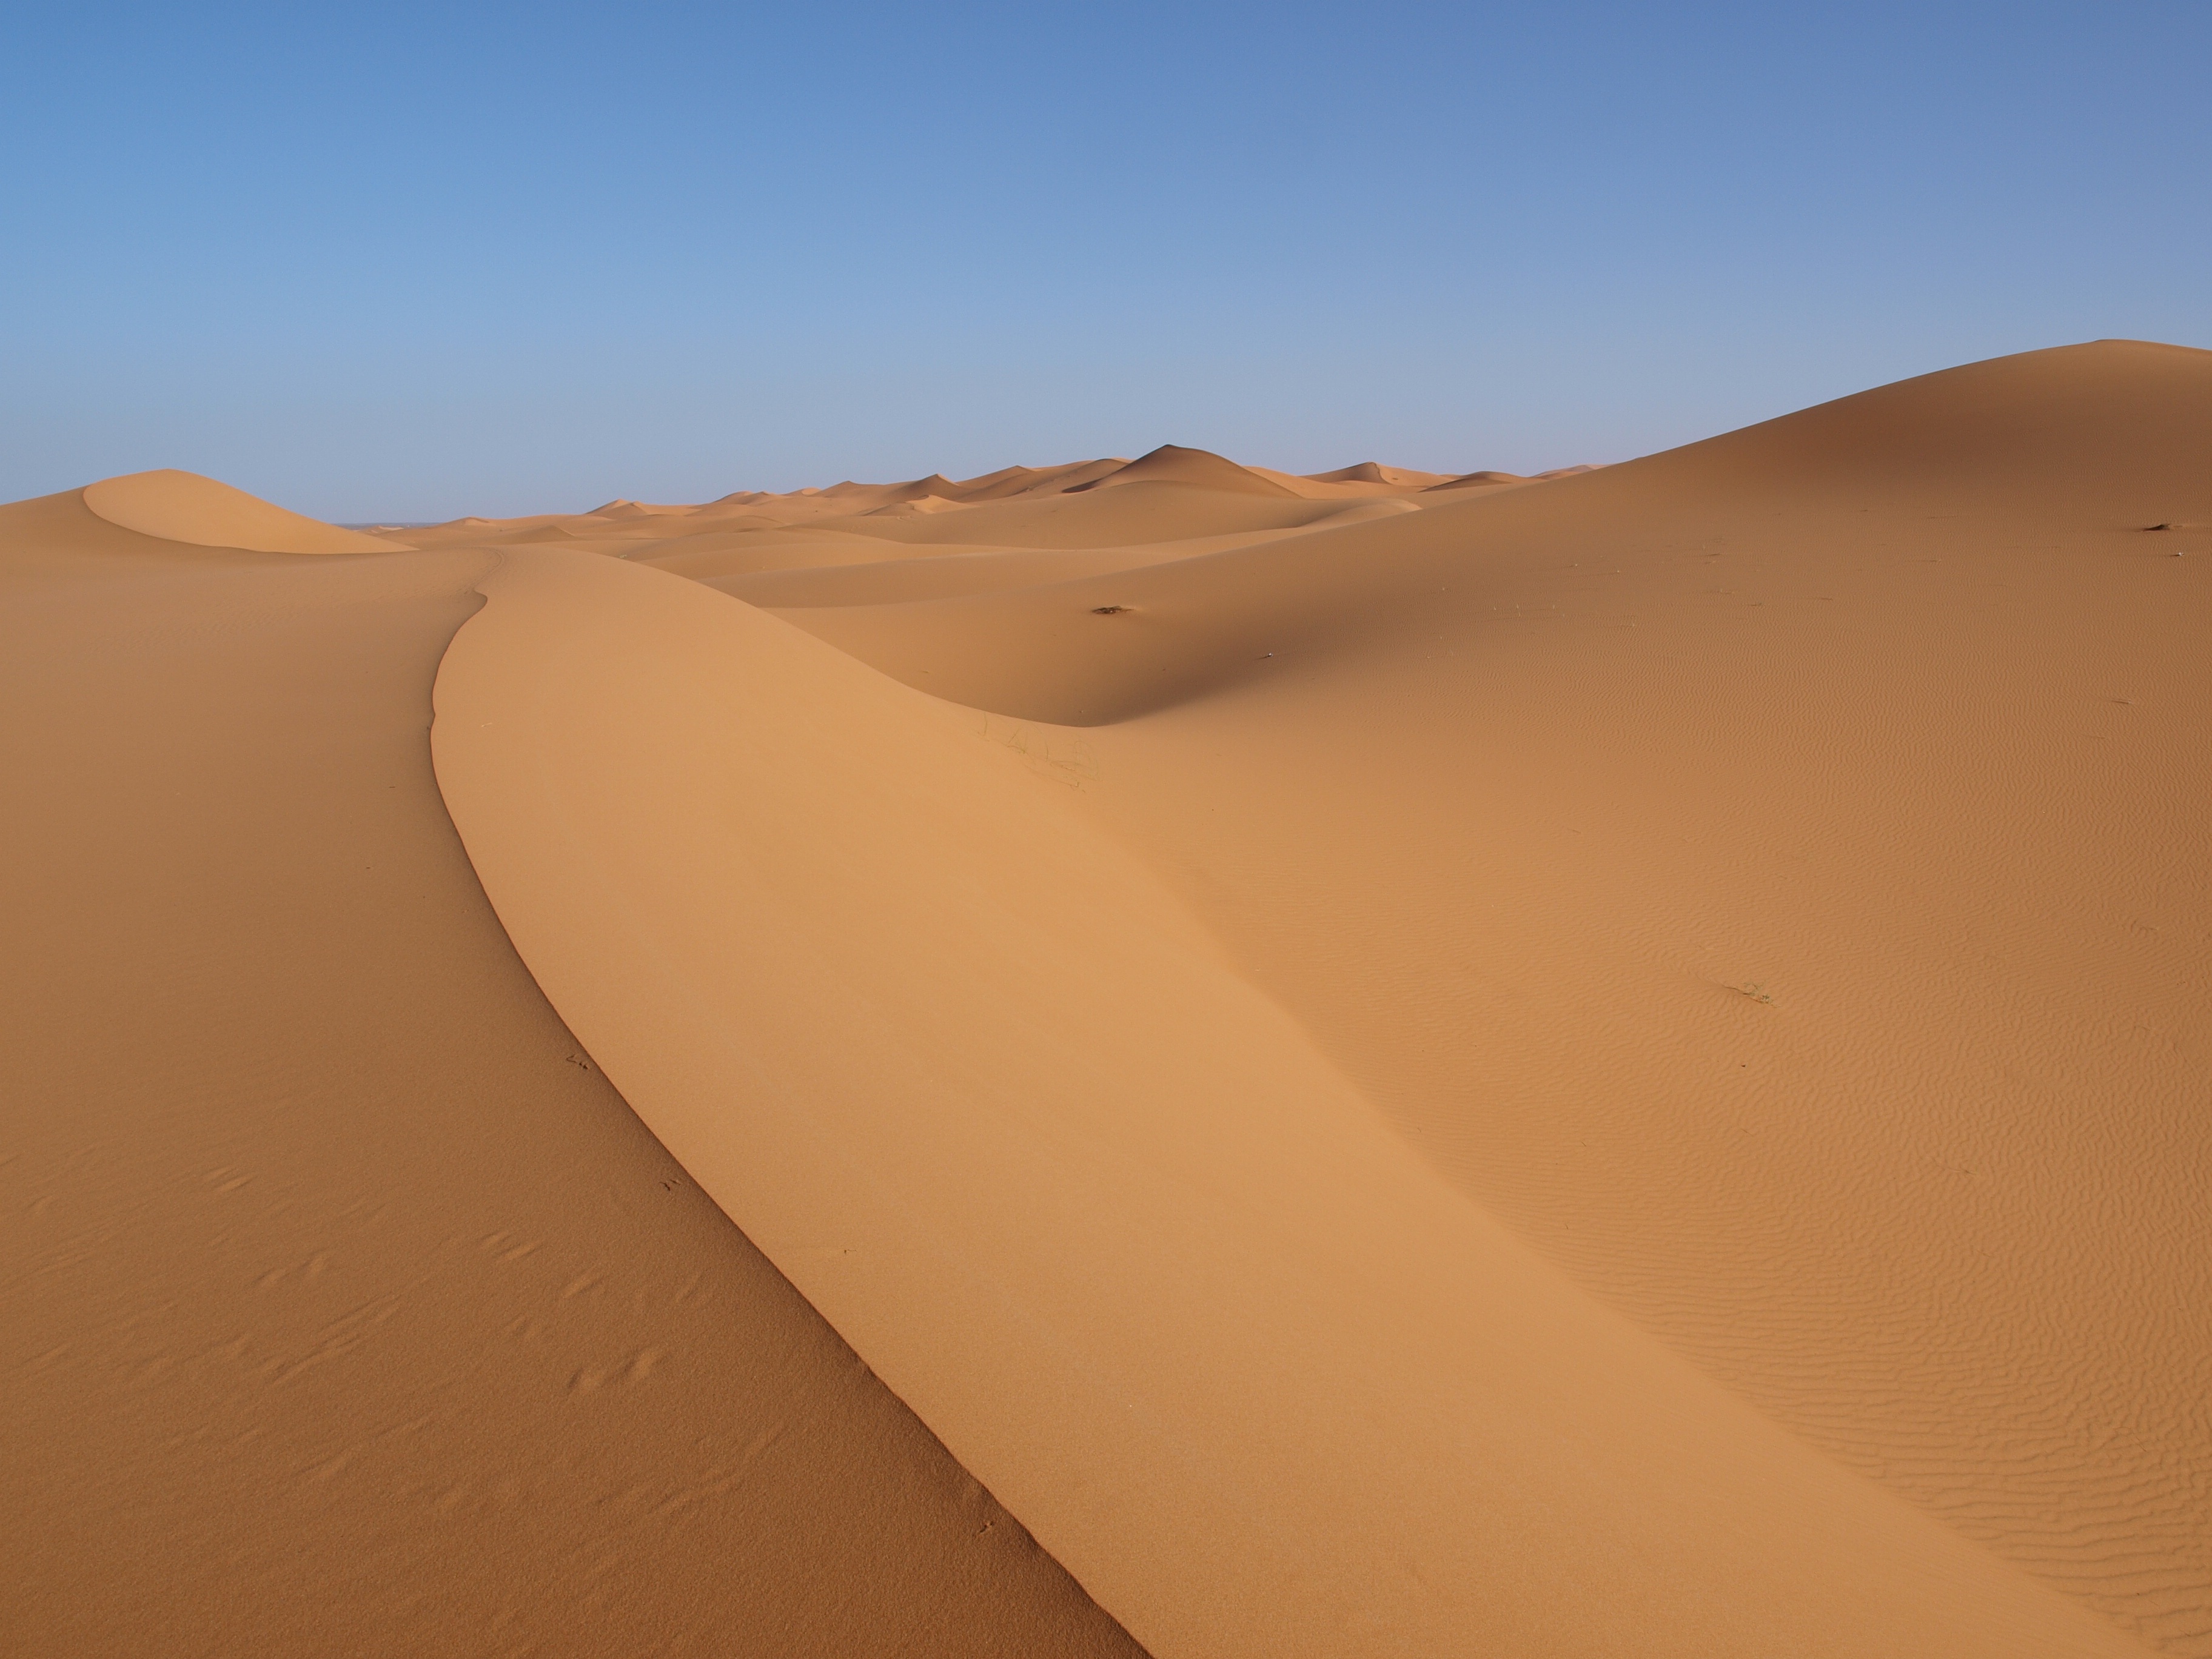 The sands of the Sahara desert